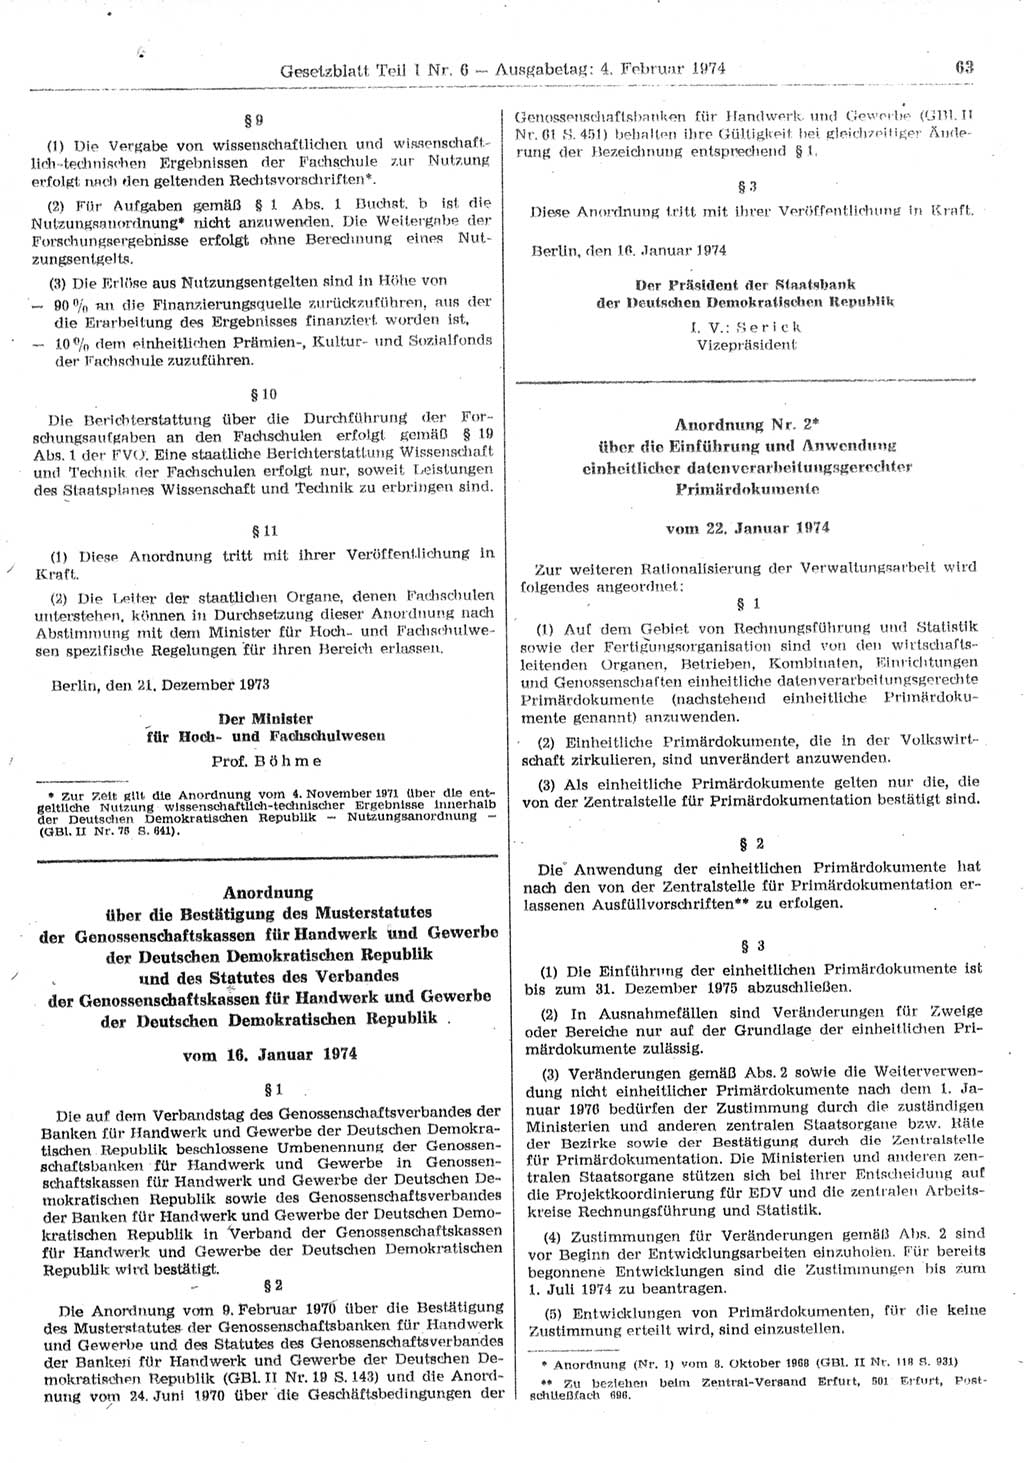 Gesetzblatt (GBl.) der Deutschen Demokratischen Republik (DDR) Teil Ⅰ 1974, Seite 63 (GBl. DDR Ⅰ 1974, S. 63)